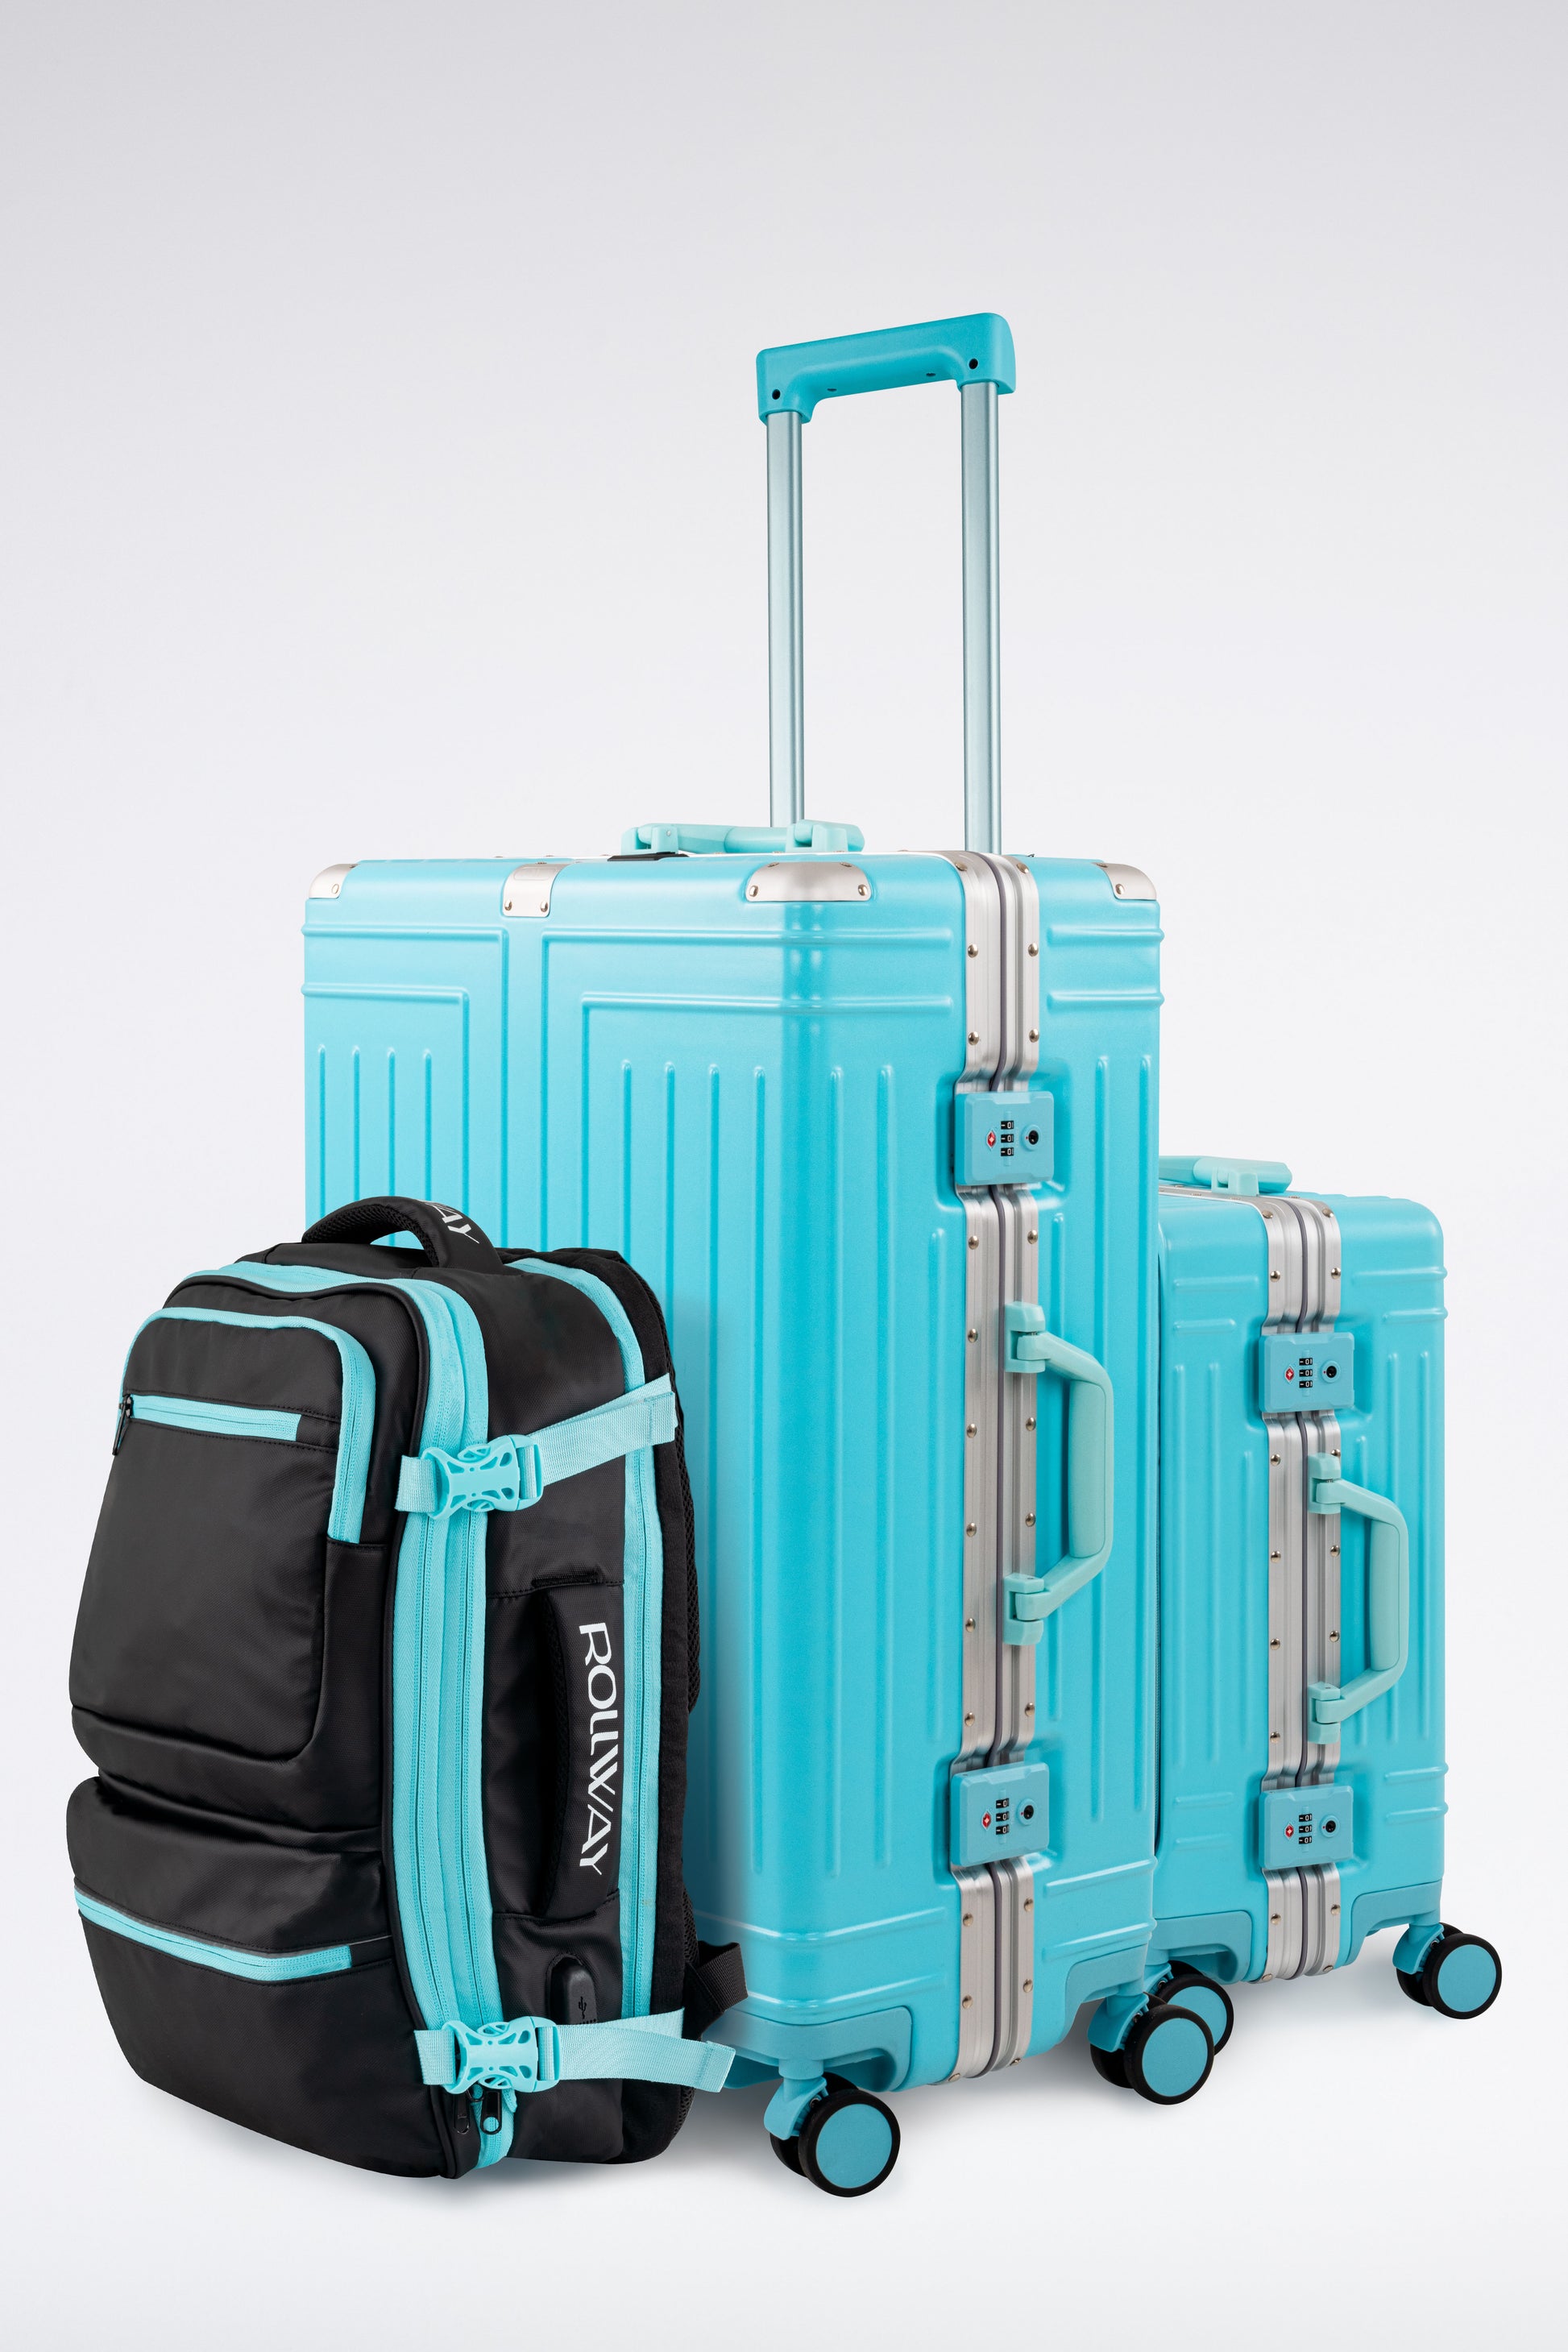 Tipos de maletas según el material ¿Cuál es el más adecuado? - Blog de  Maletas y equipaje - El equipo de viaje